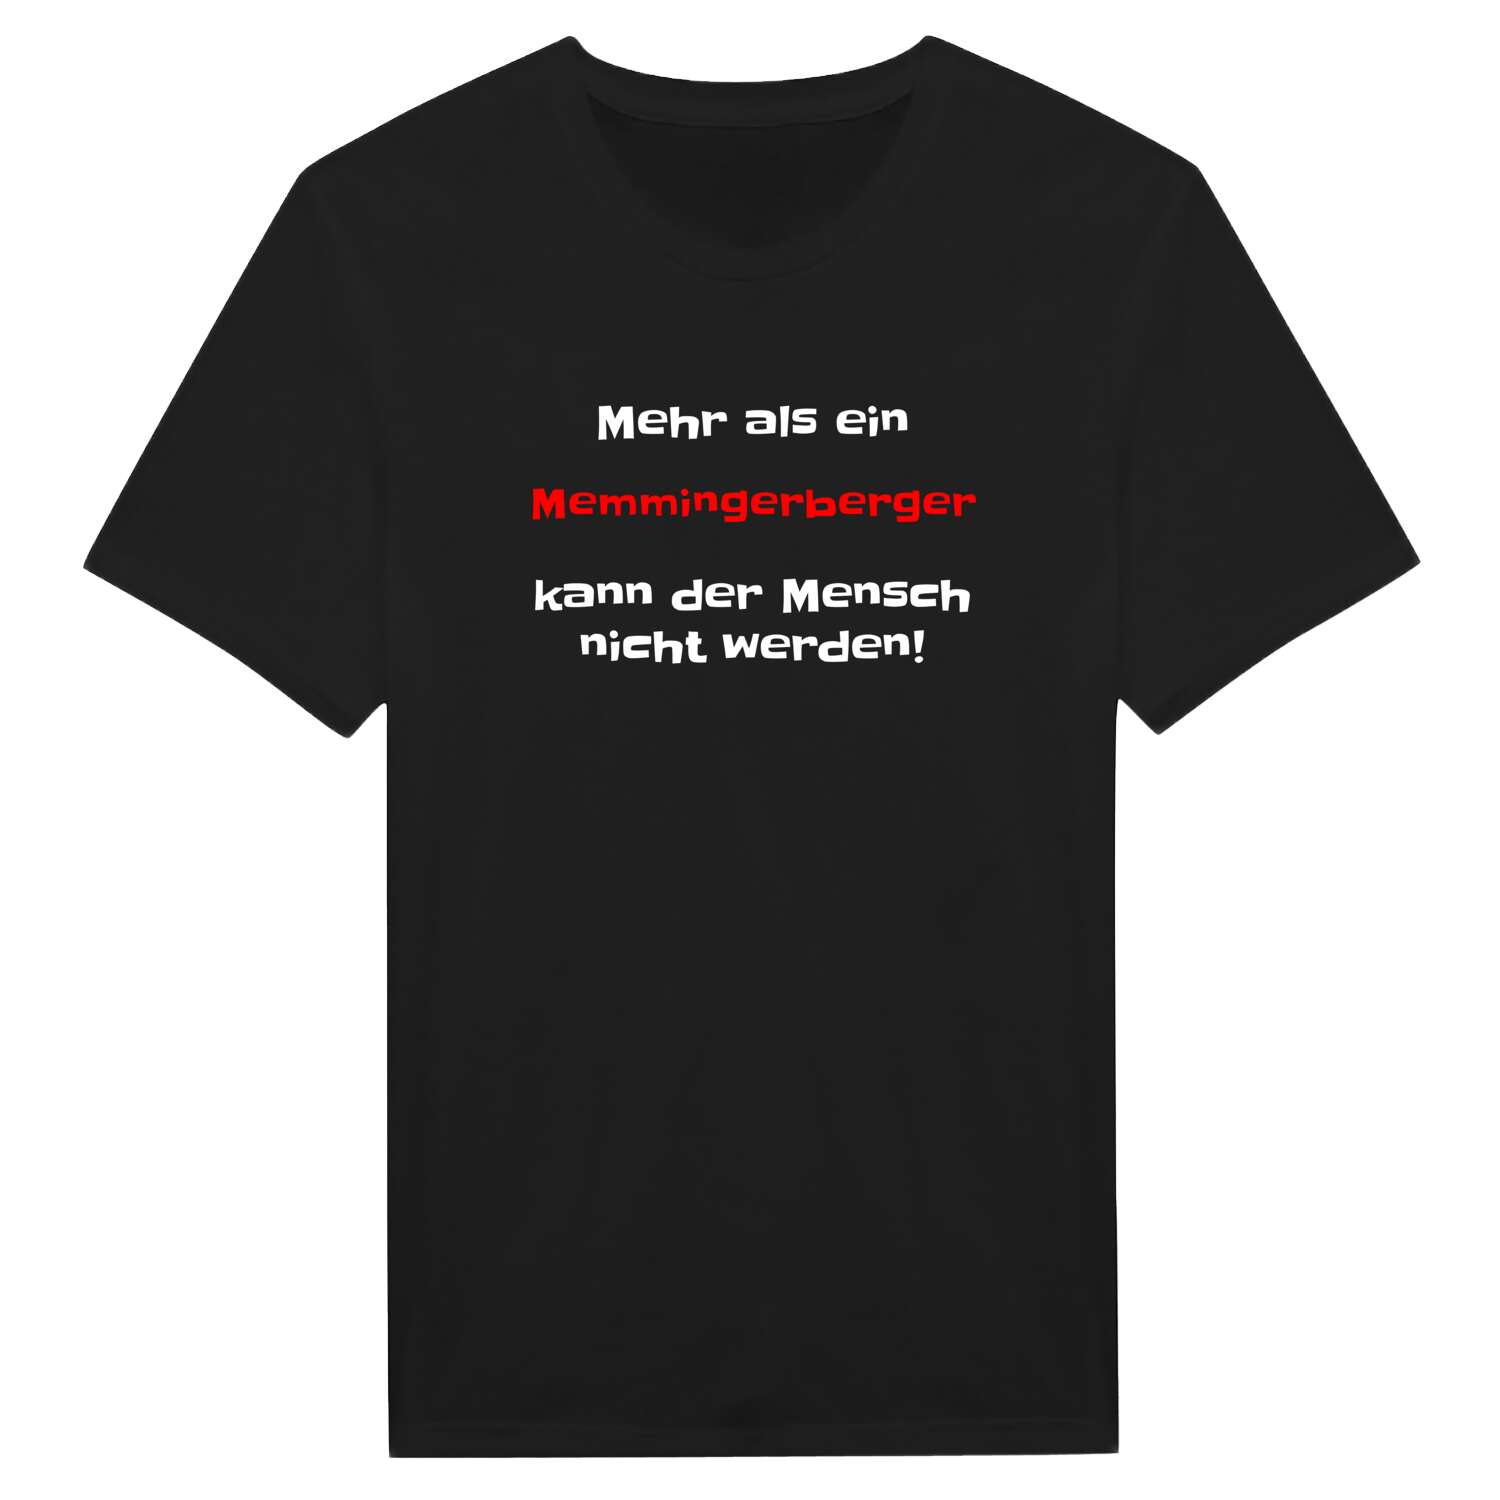 Memmingerberg T-Shirt »Mehr als ein«